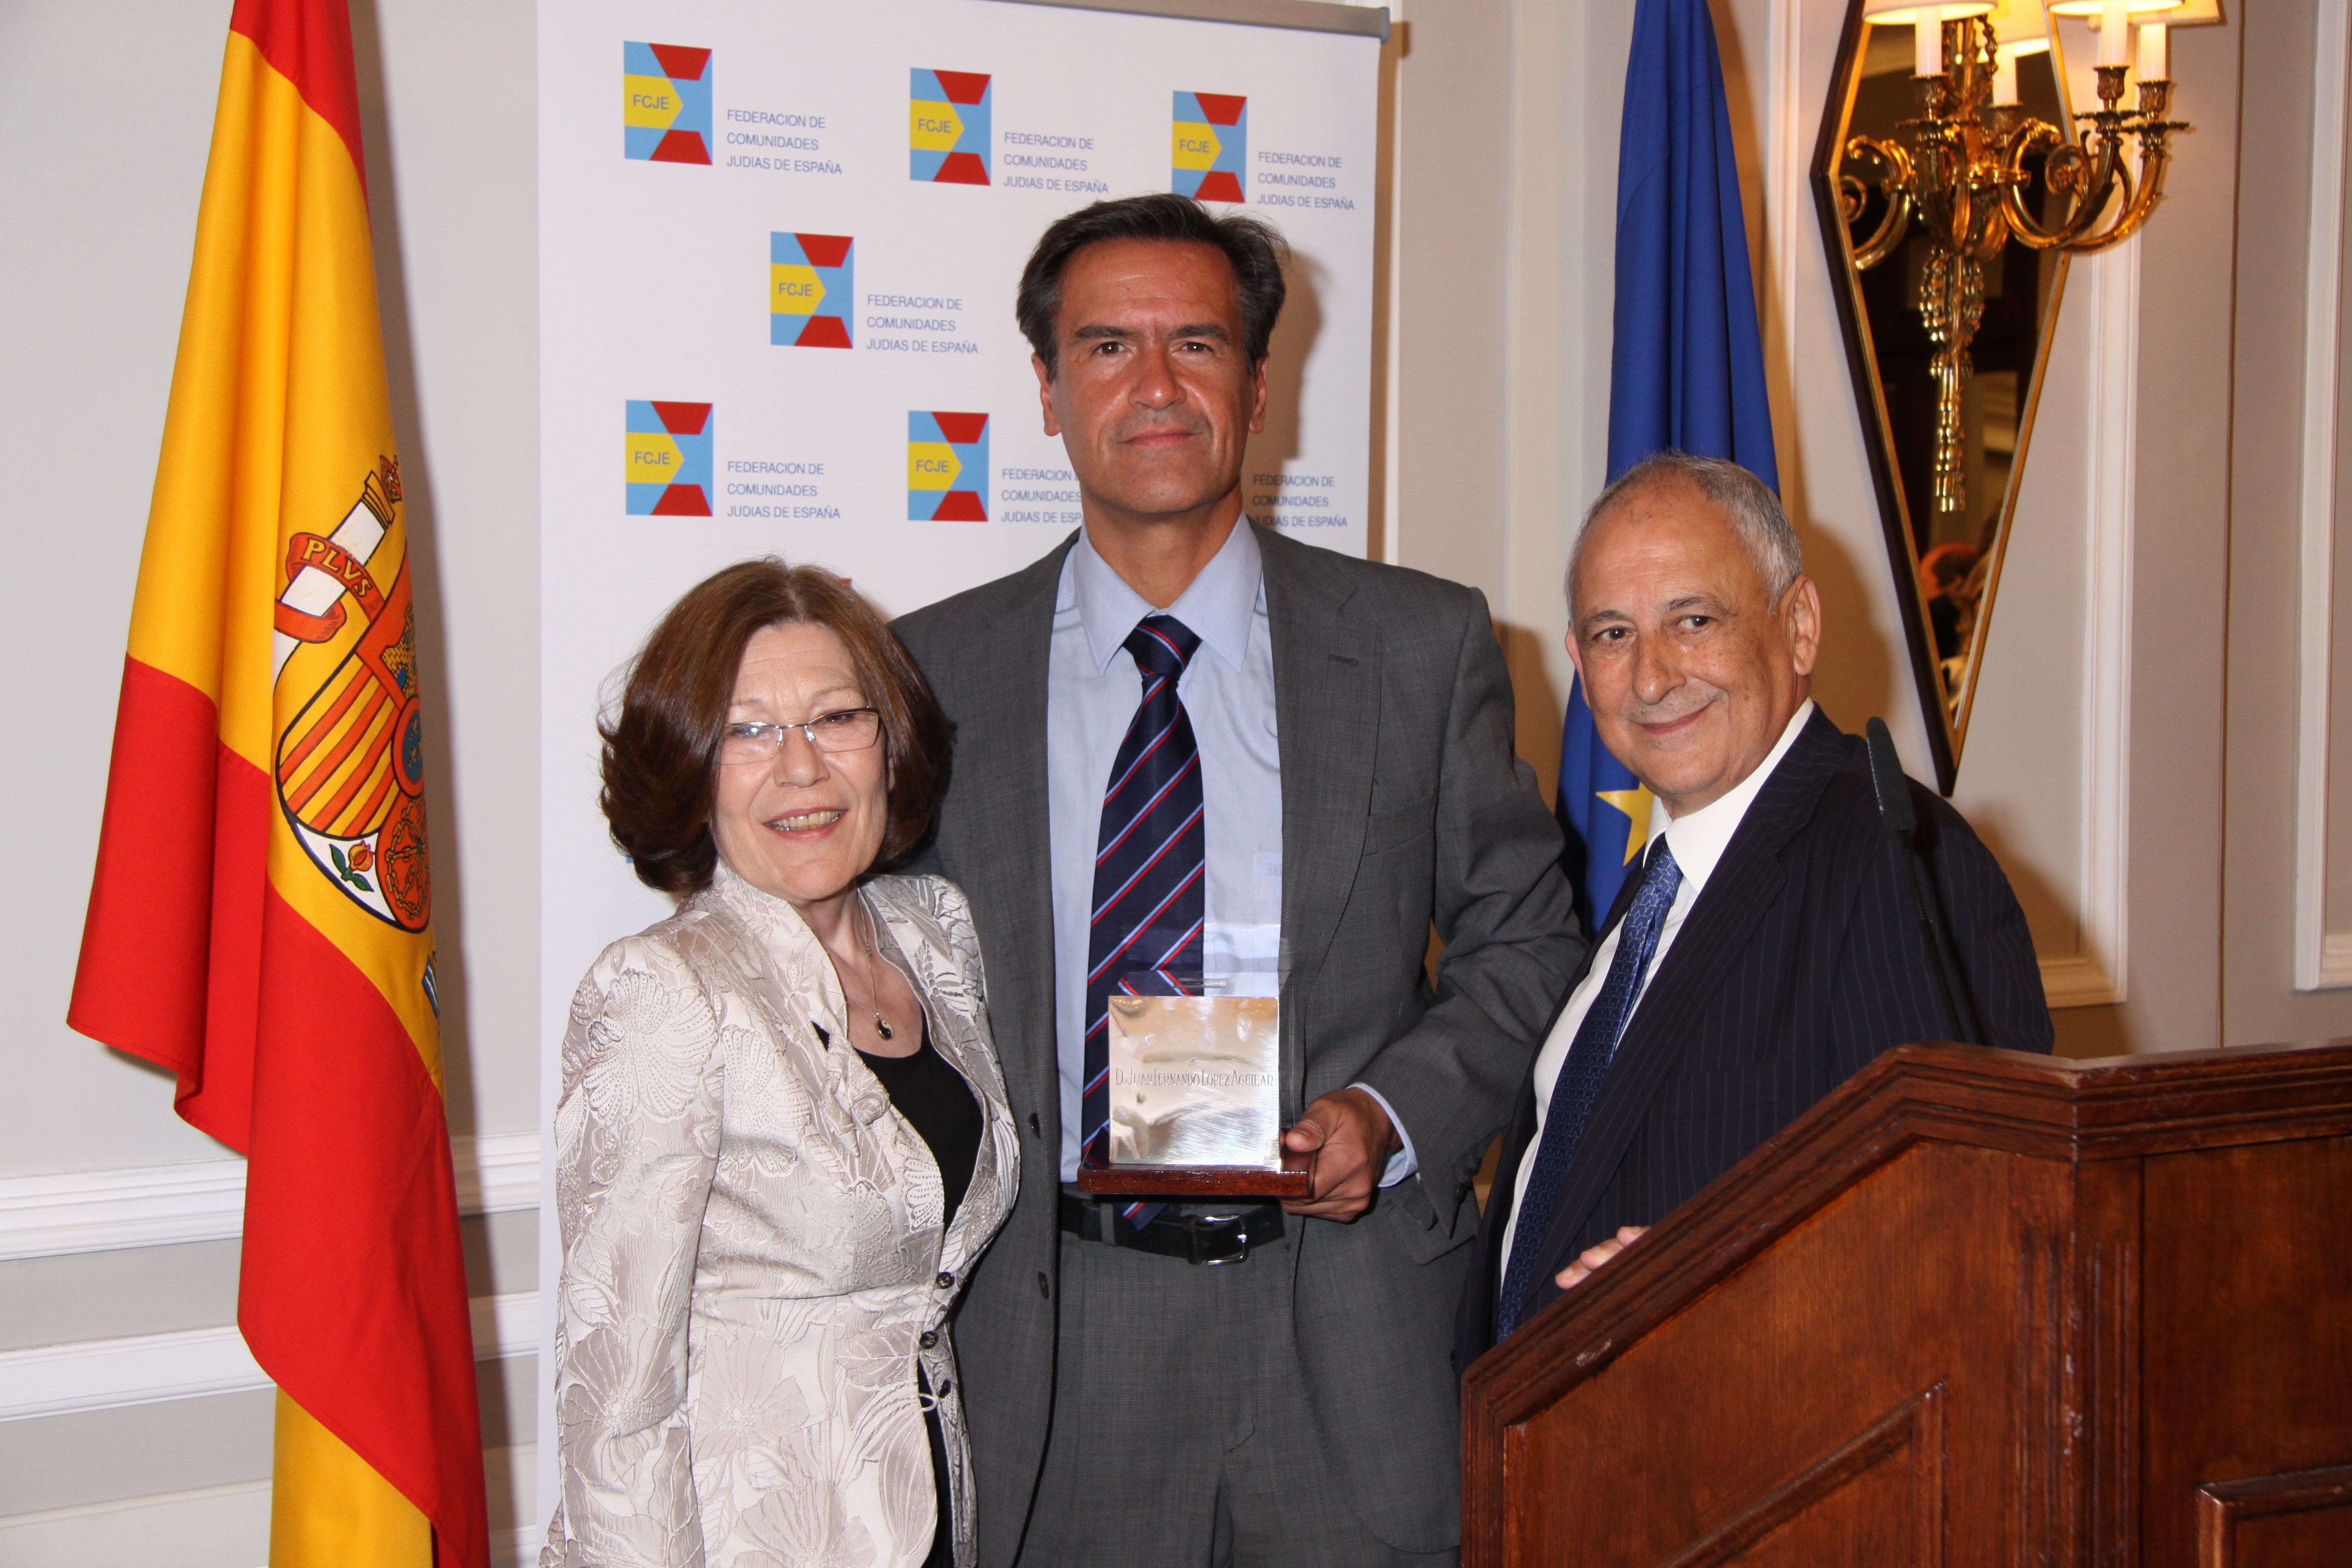 Concedido a D. Juan Fernando López Aguilar, Ministro de Justicia, por su apoyo a la Comunidad Judía y a otras minorías, al promover la creación de la Fundación Pluralismo y Convivencia en el año 2005.